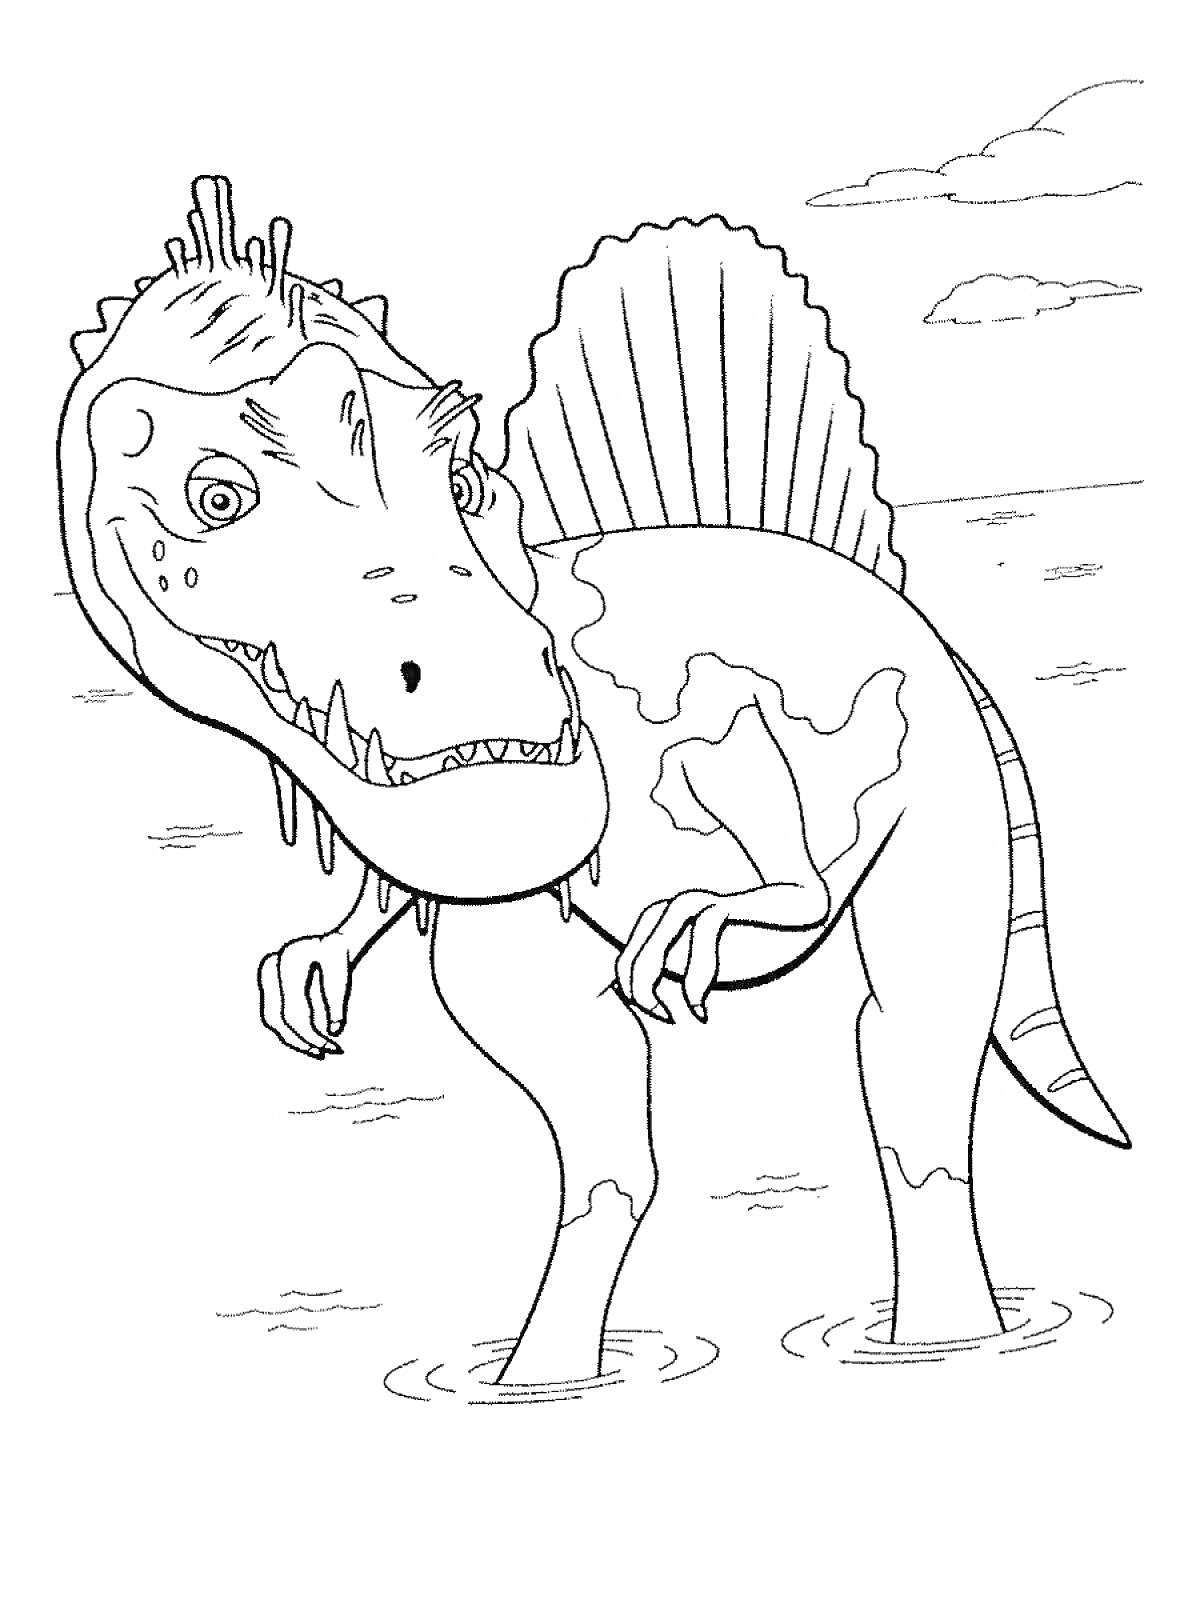 Динозавр в воде с плавником на спине и облаками на заднем плане